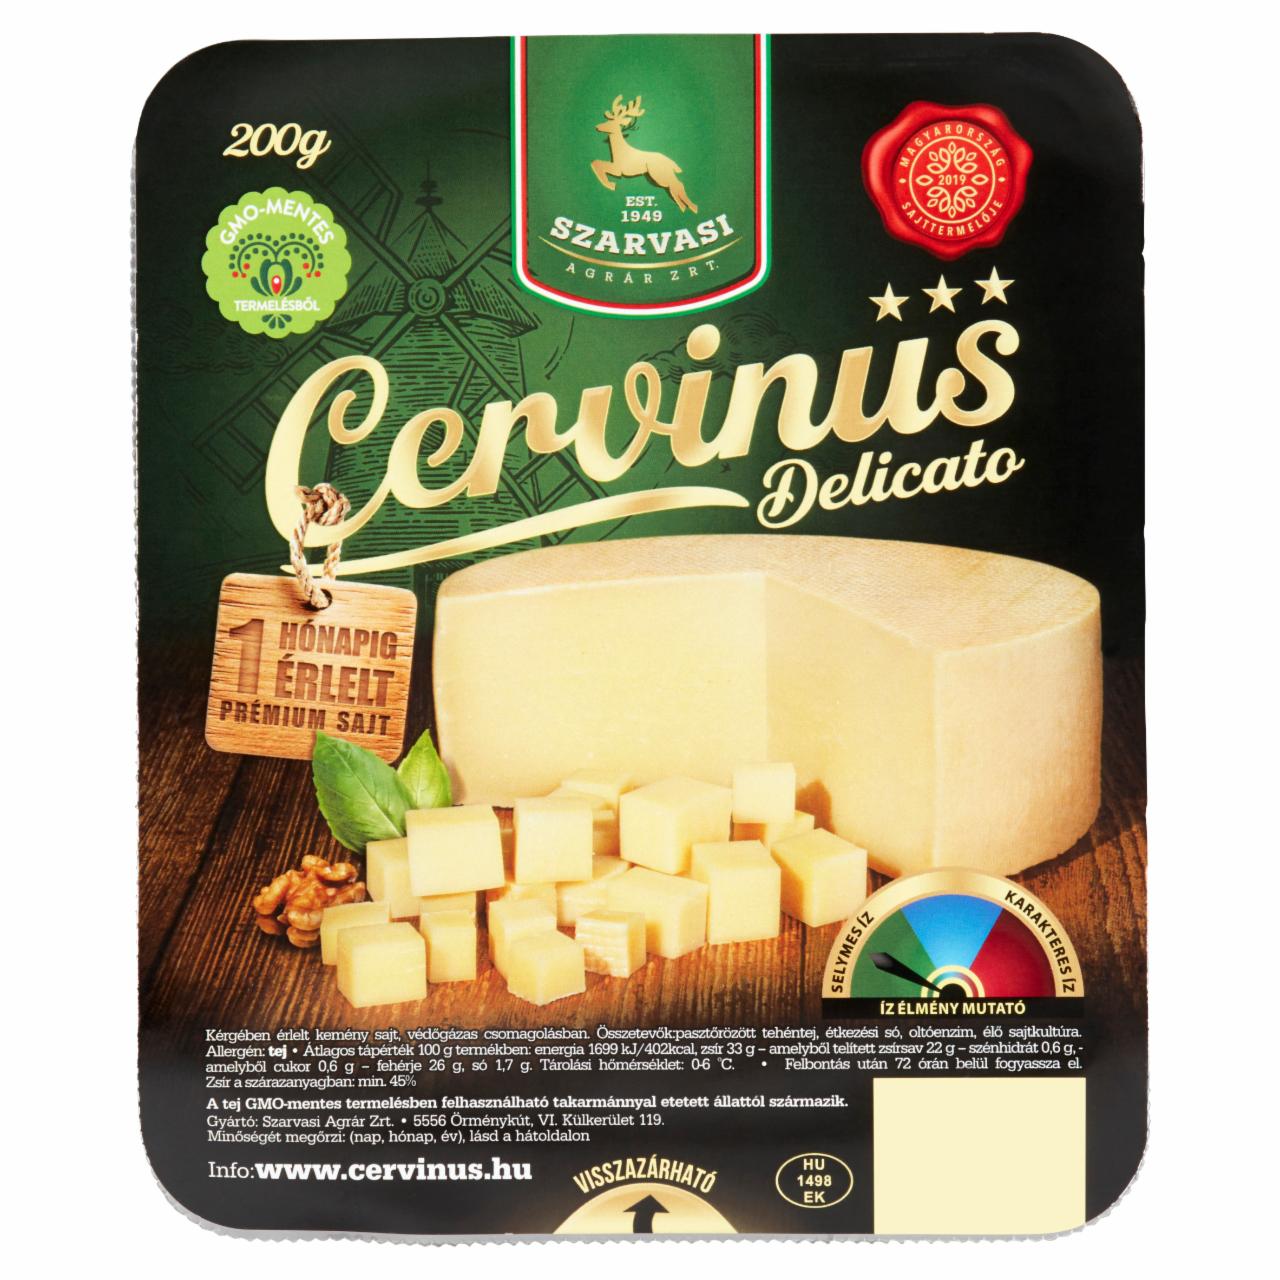 Képek - Szarvasi Cervinus Delicato kérgében érlelt kemény sajt 200 g